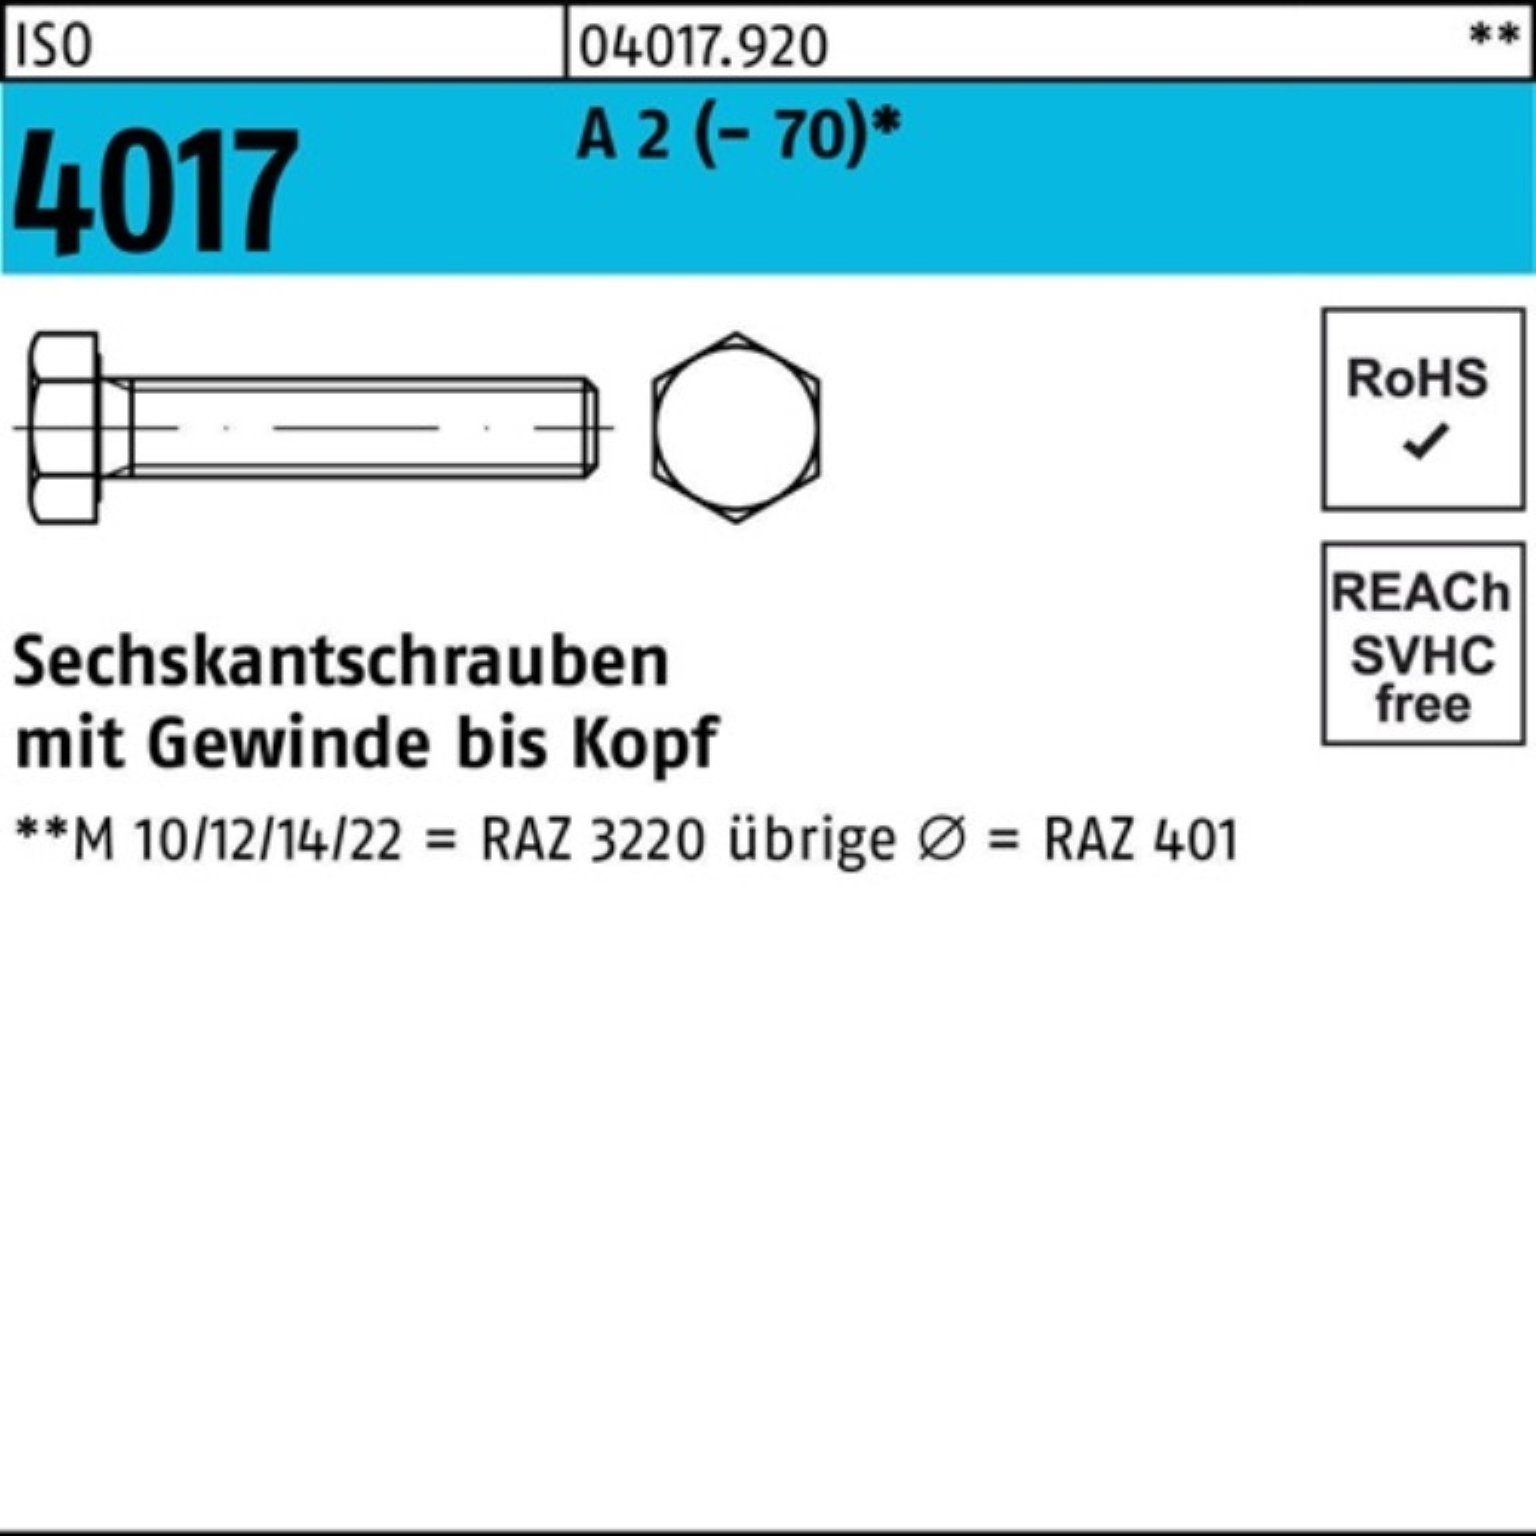 Bufab Sechskantschraube 100er Pack Sechskantschraube ISO 4017 VG M6x 14 A 2 (70) 100 Stück